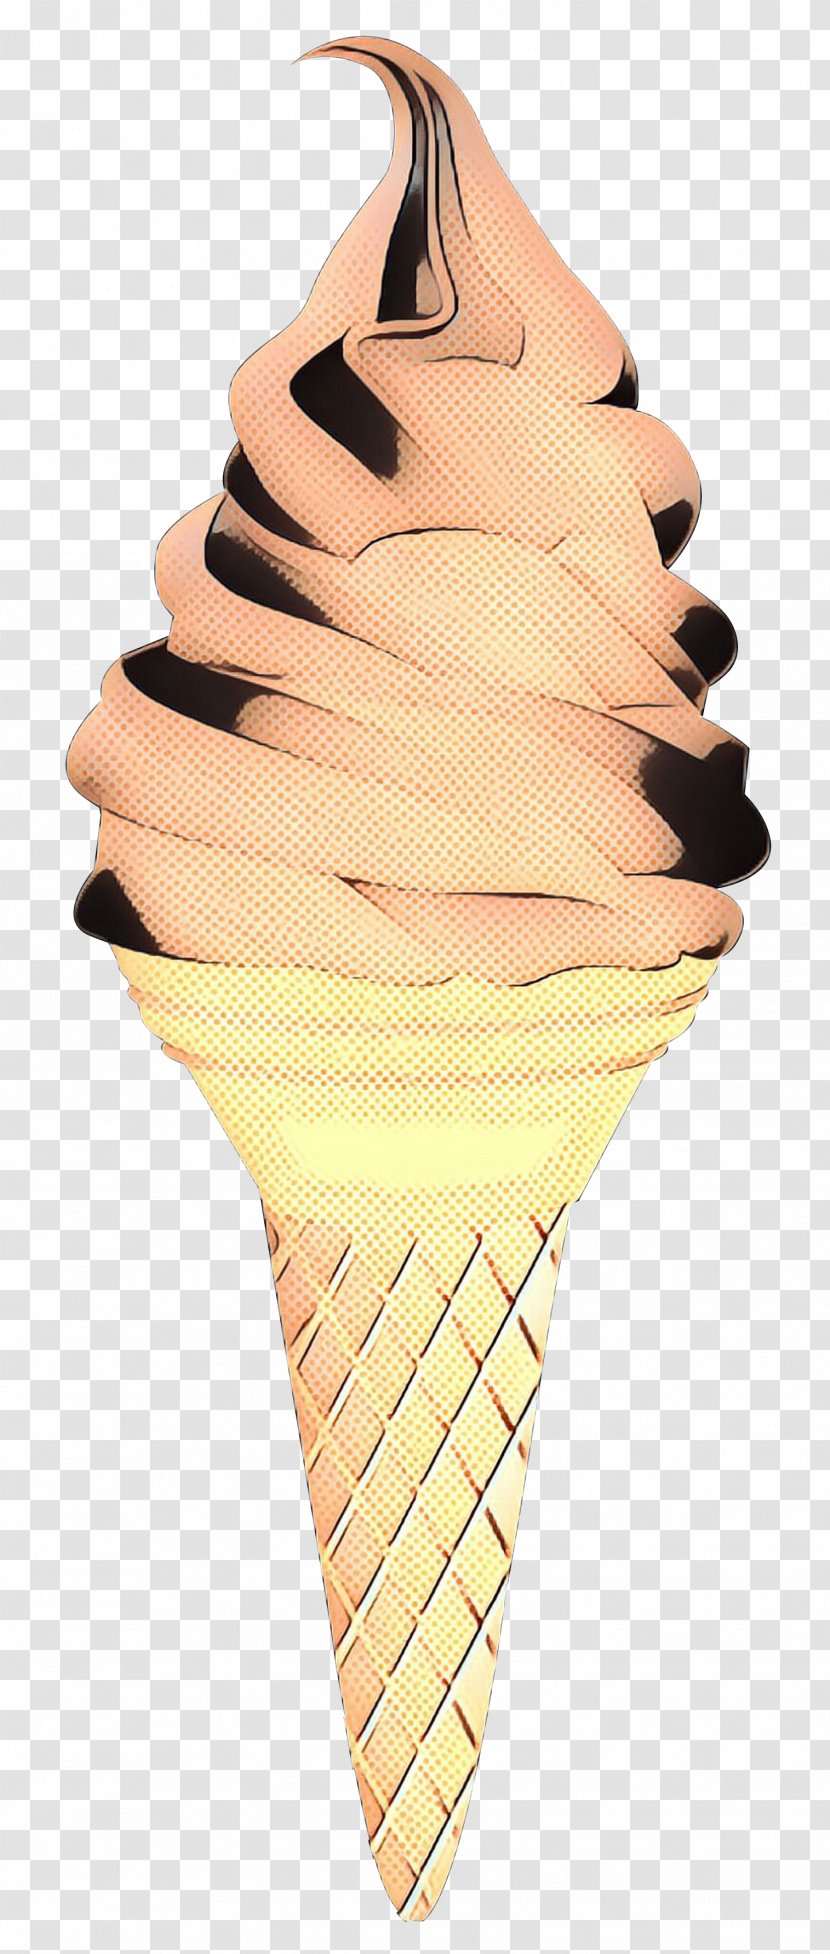 Ice Cream Cones - Dessert Transparent PNG